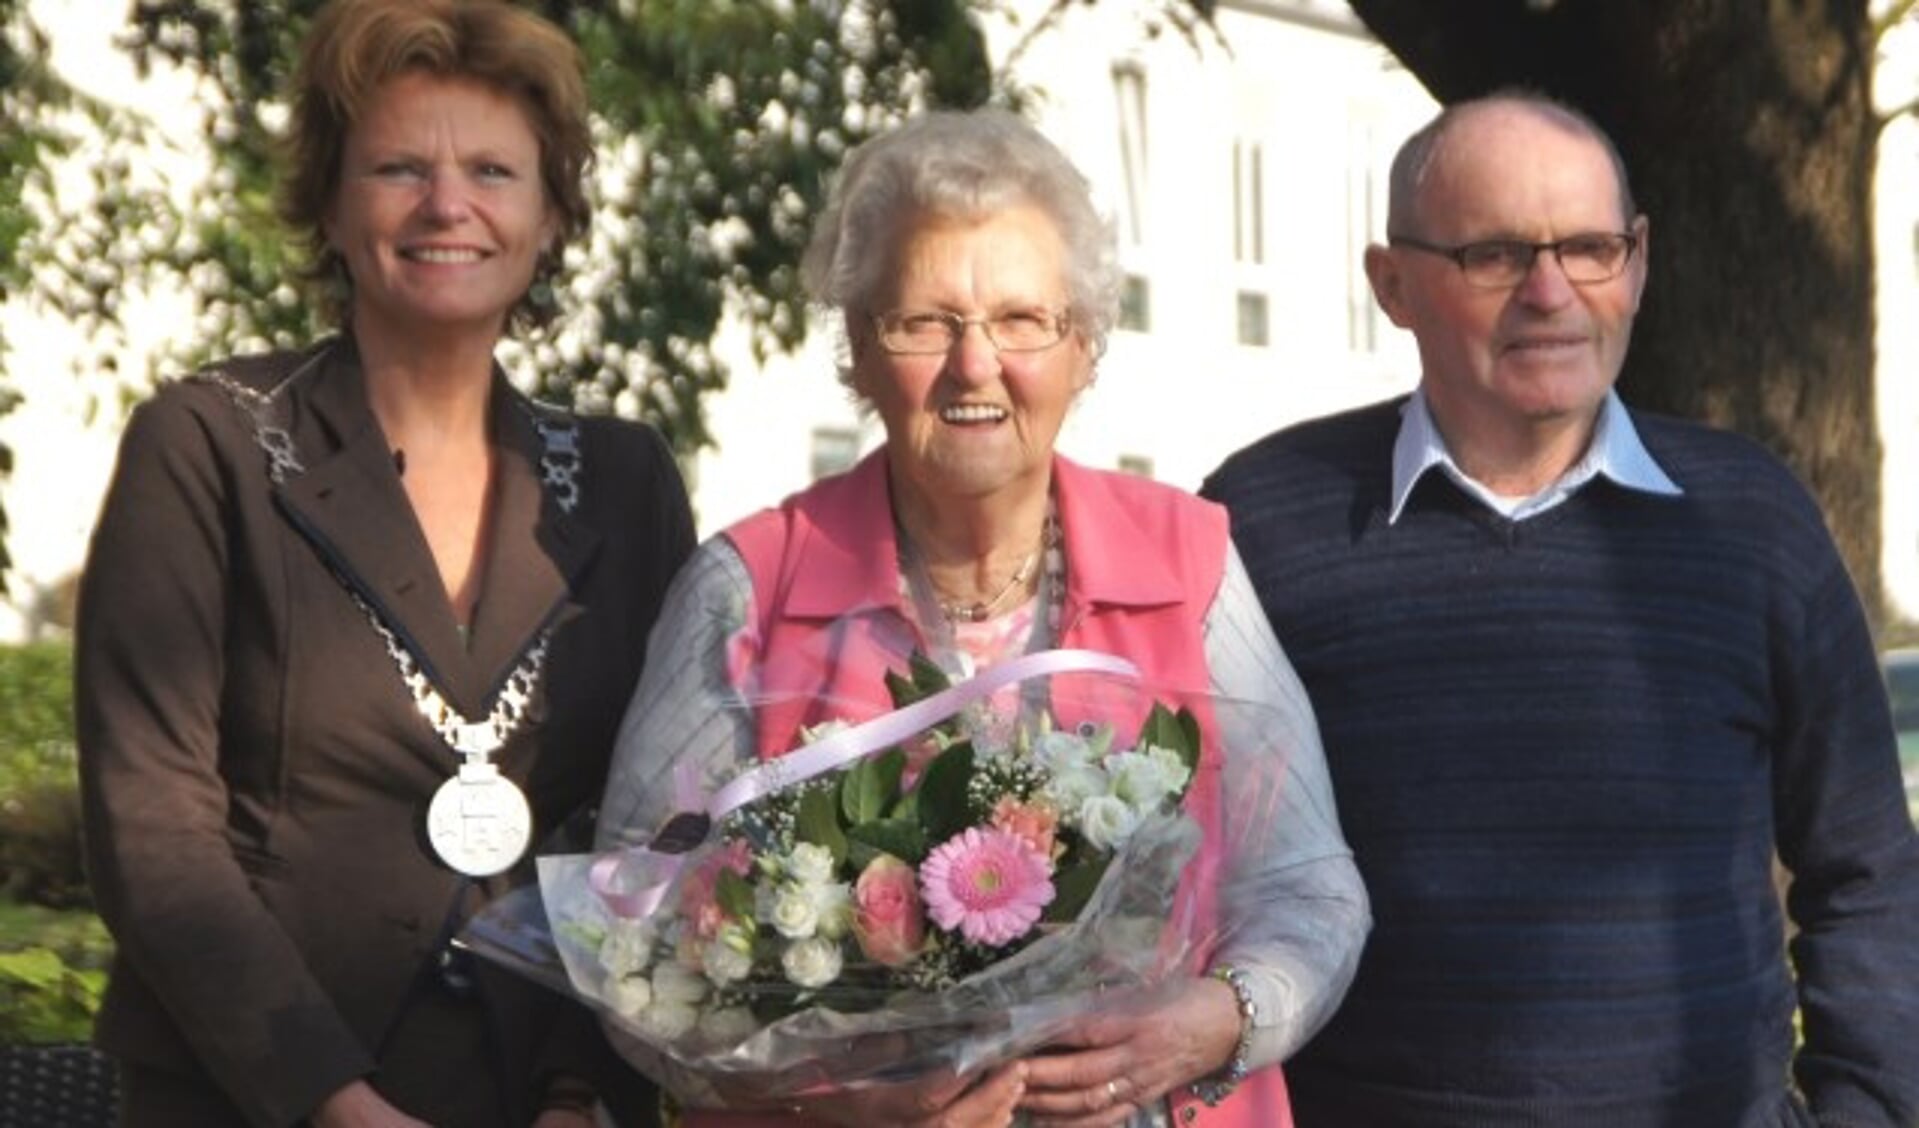 Hoog bezoek aan het paar van burgemeester Van Hartskamp-de Jong. (Foto: Janneke Severs-Hilgeman)